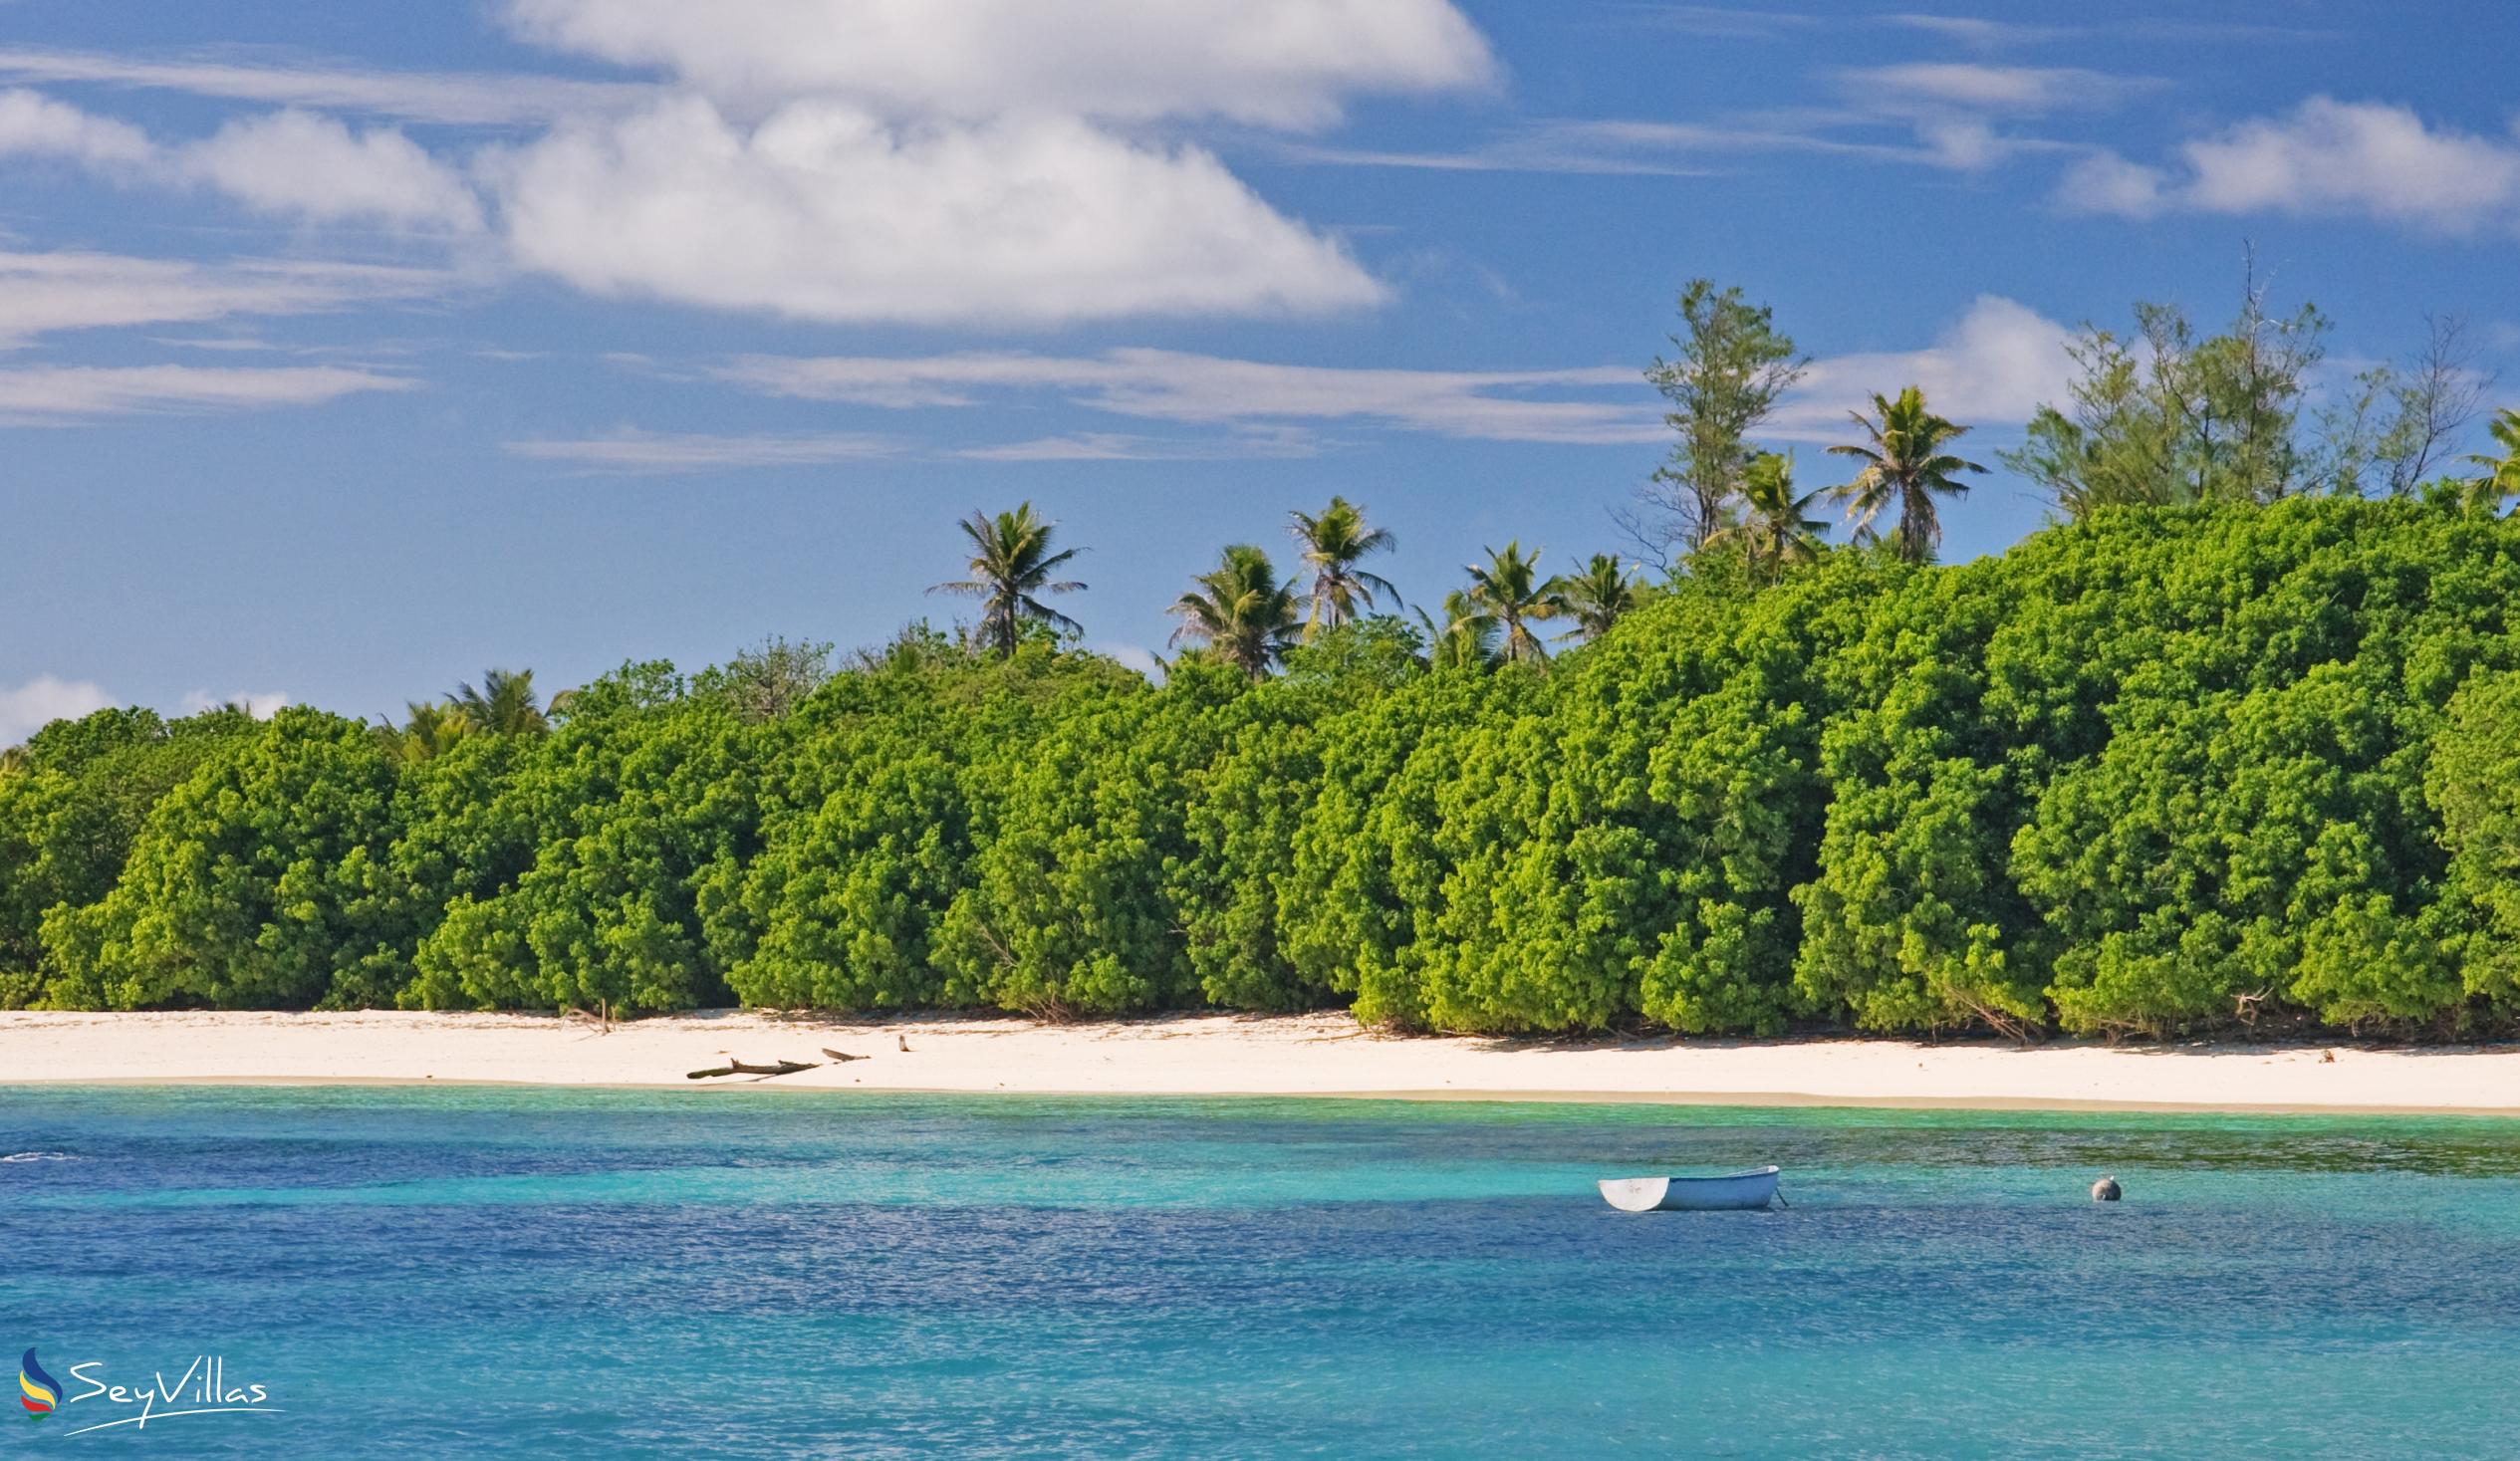 Foto 3: Bird Island Beaches - Weitere Inseln (Seychellen)